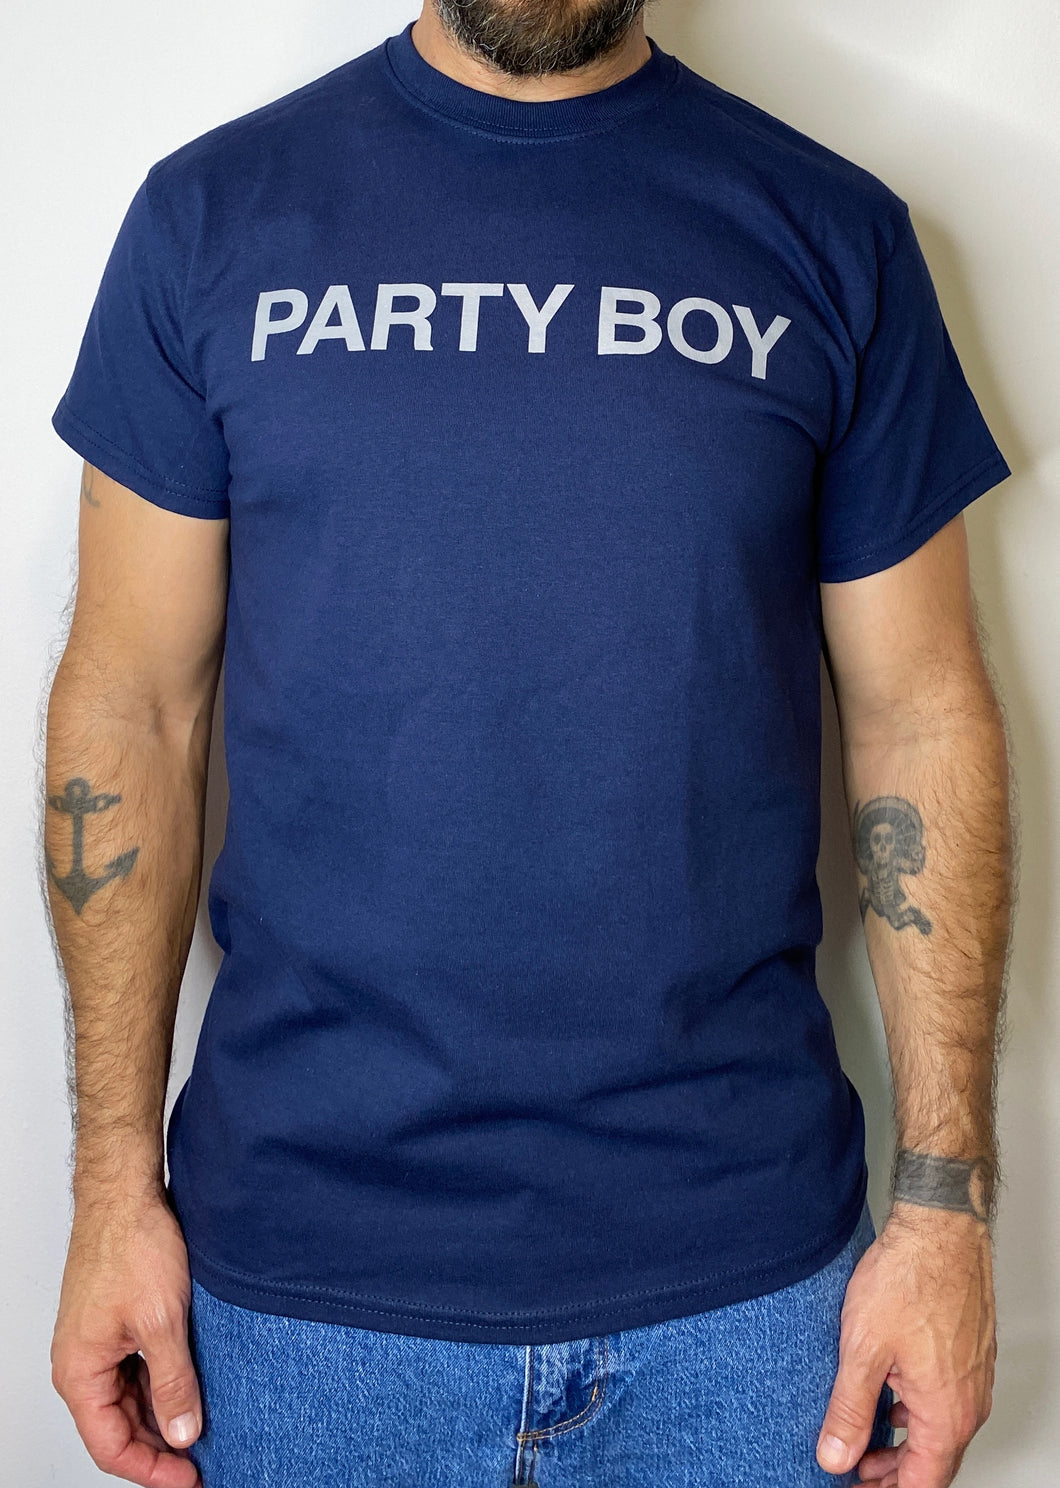 NOUVEAU! T-Shirt Party Boy BLEU MARINE